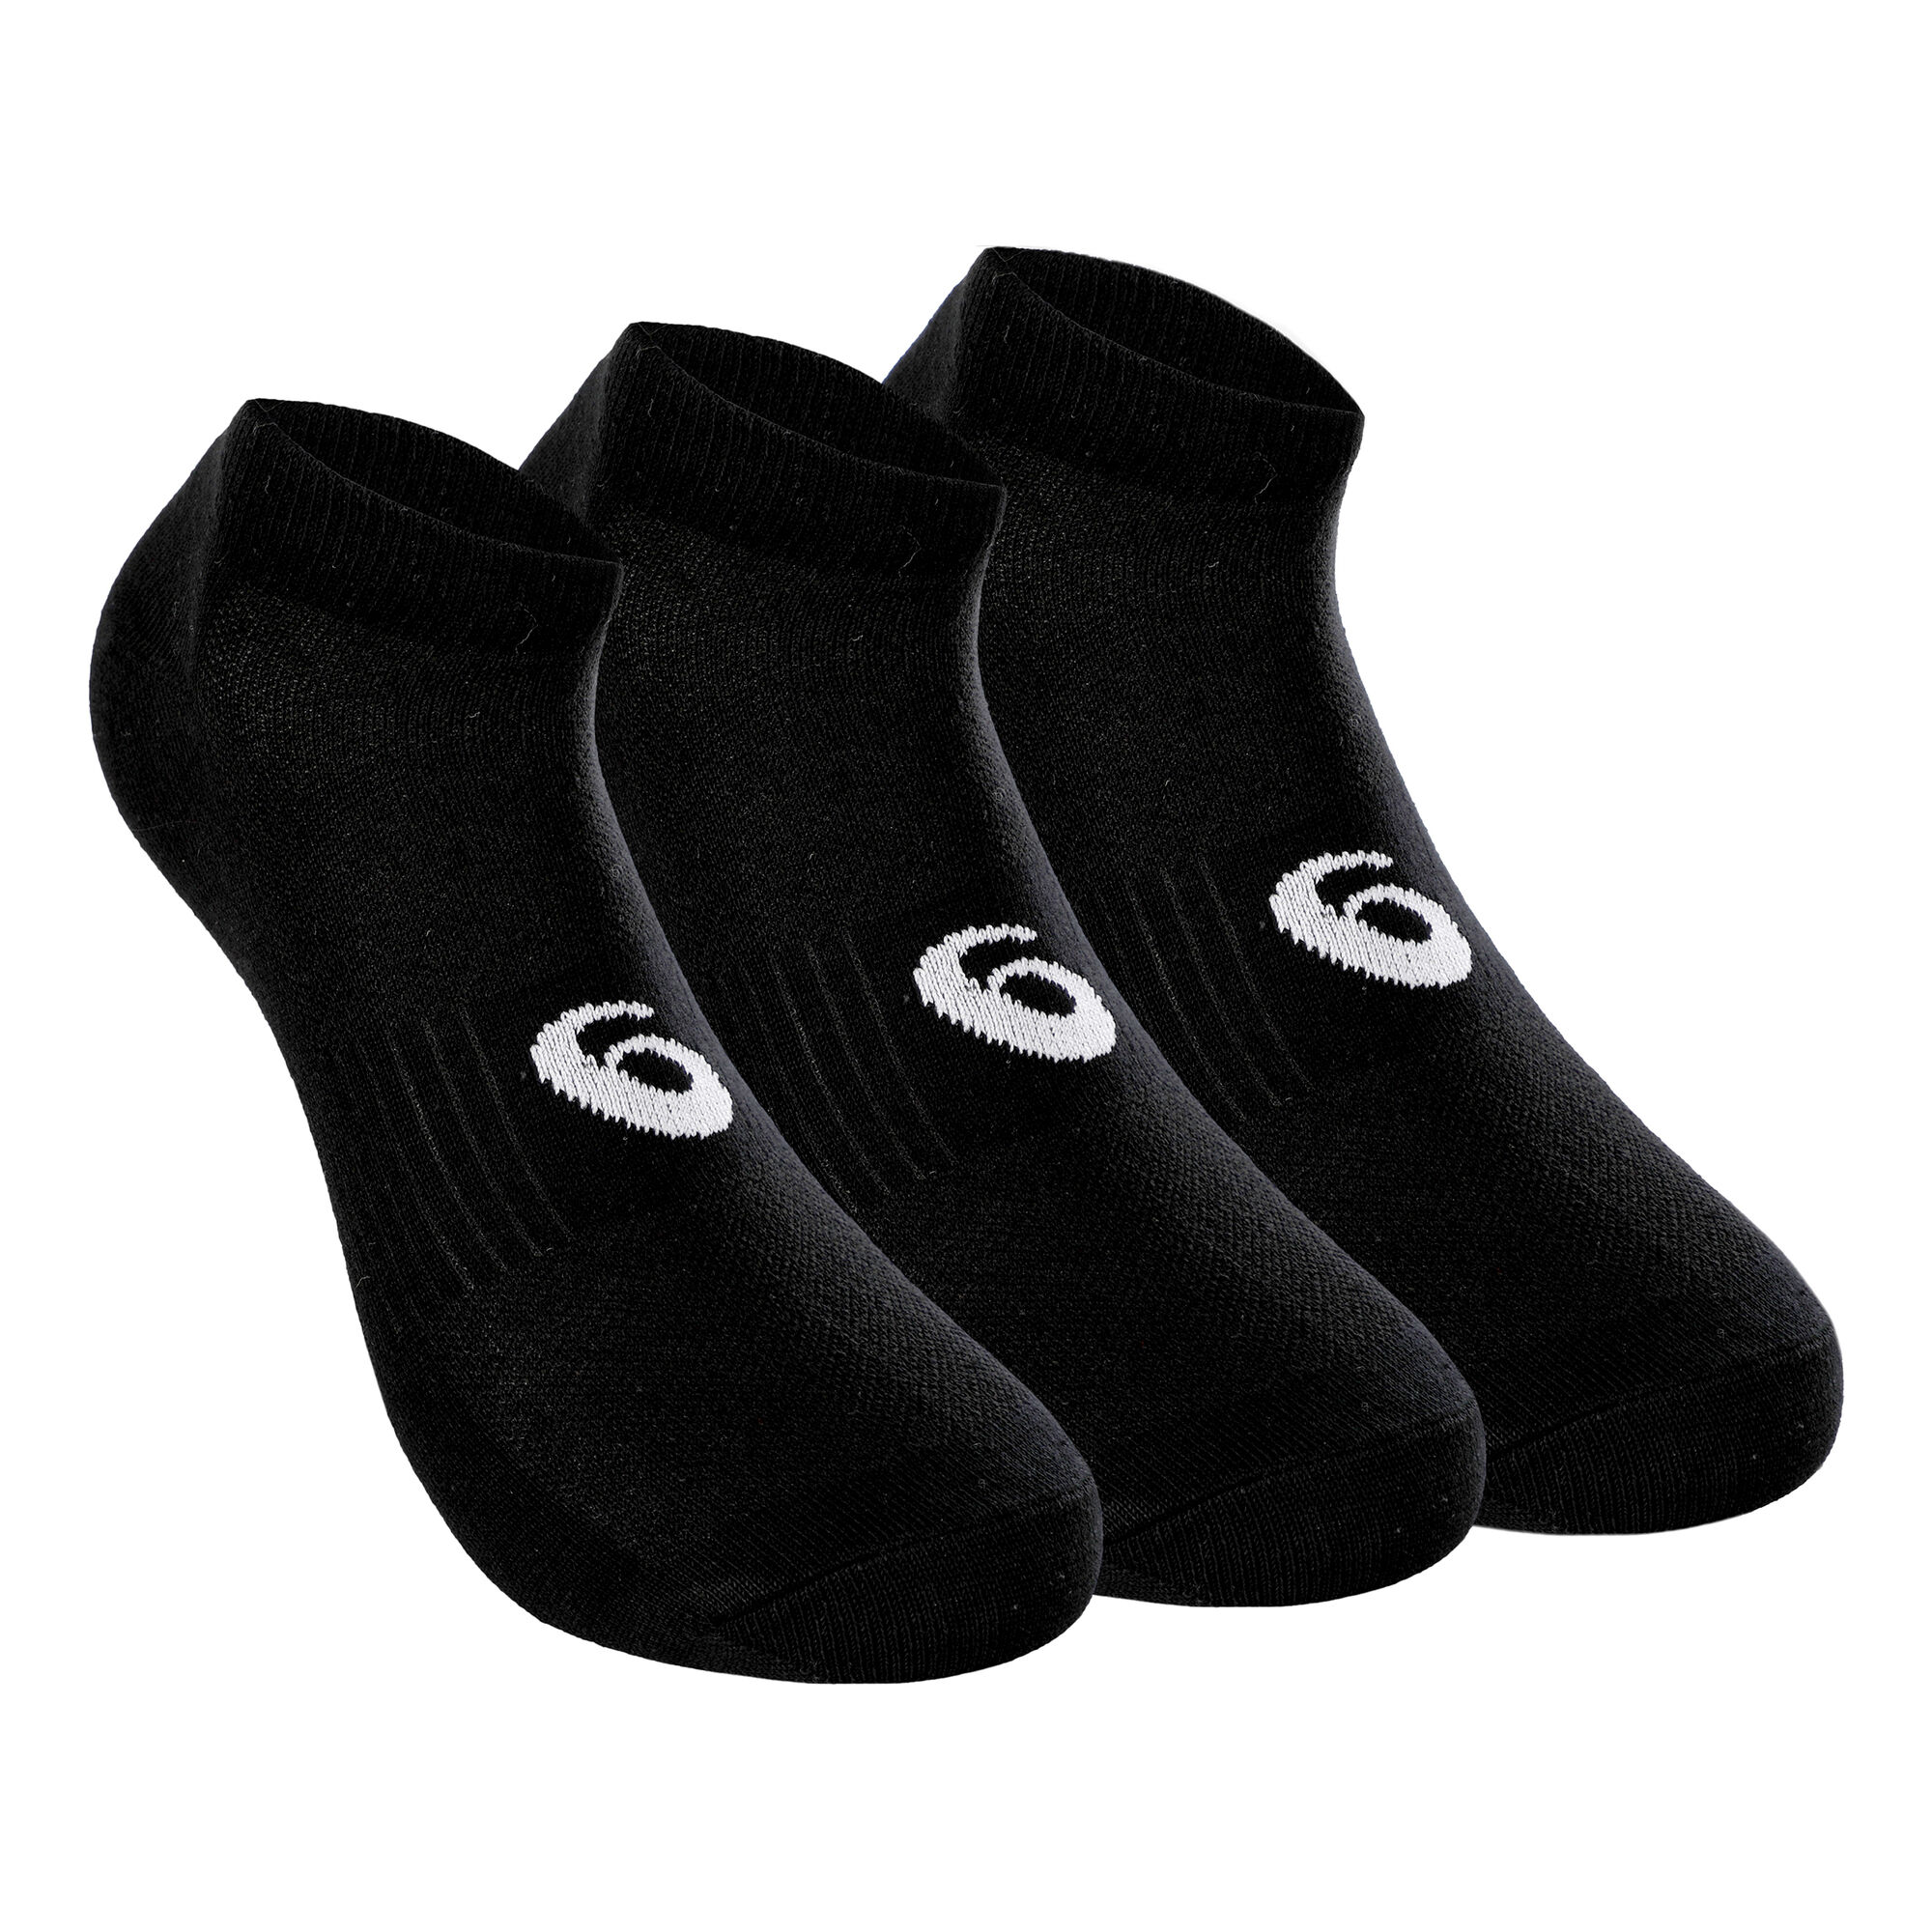 buy Asics PED Sports Socks 3 Pack - Black, White online | Tennis-Point